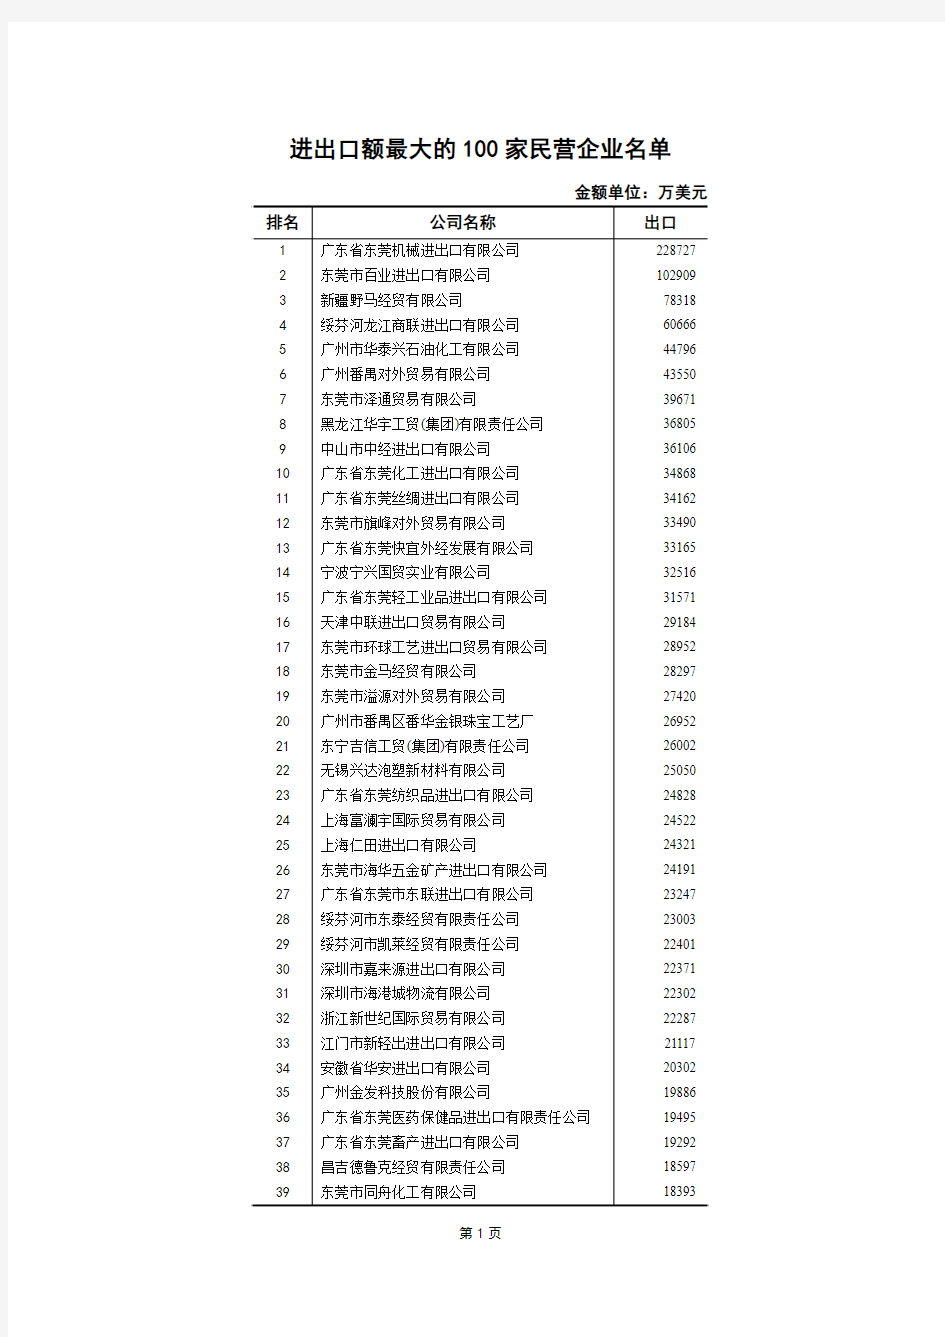 广东进出口额最大的100家民营企业名单